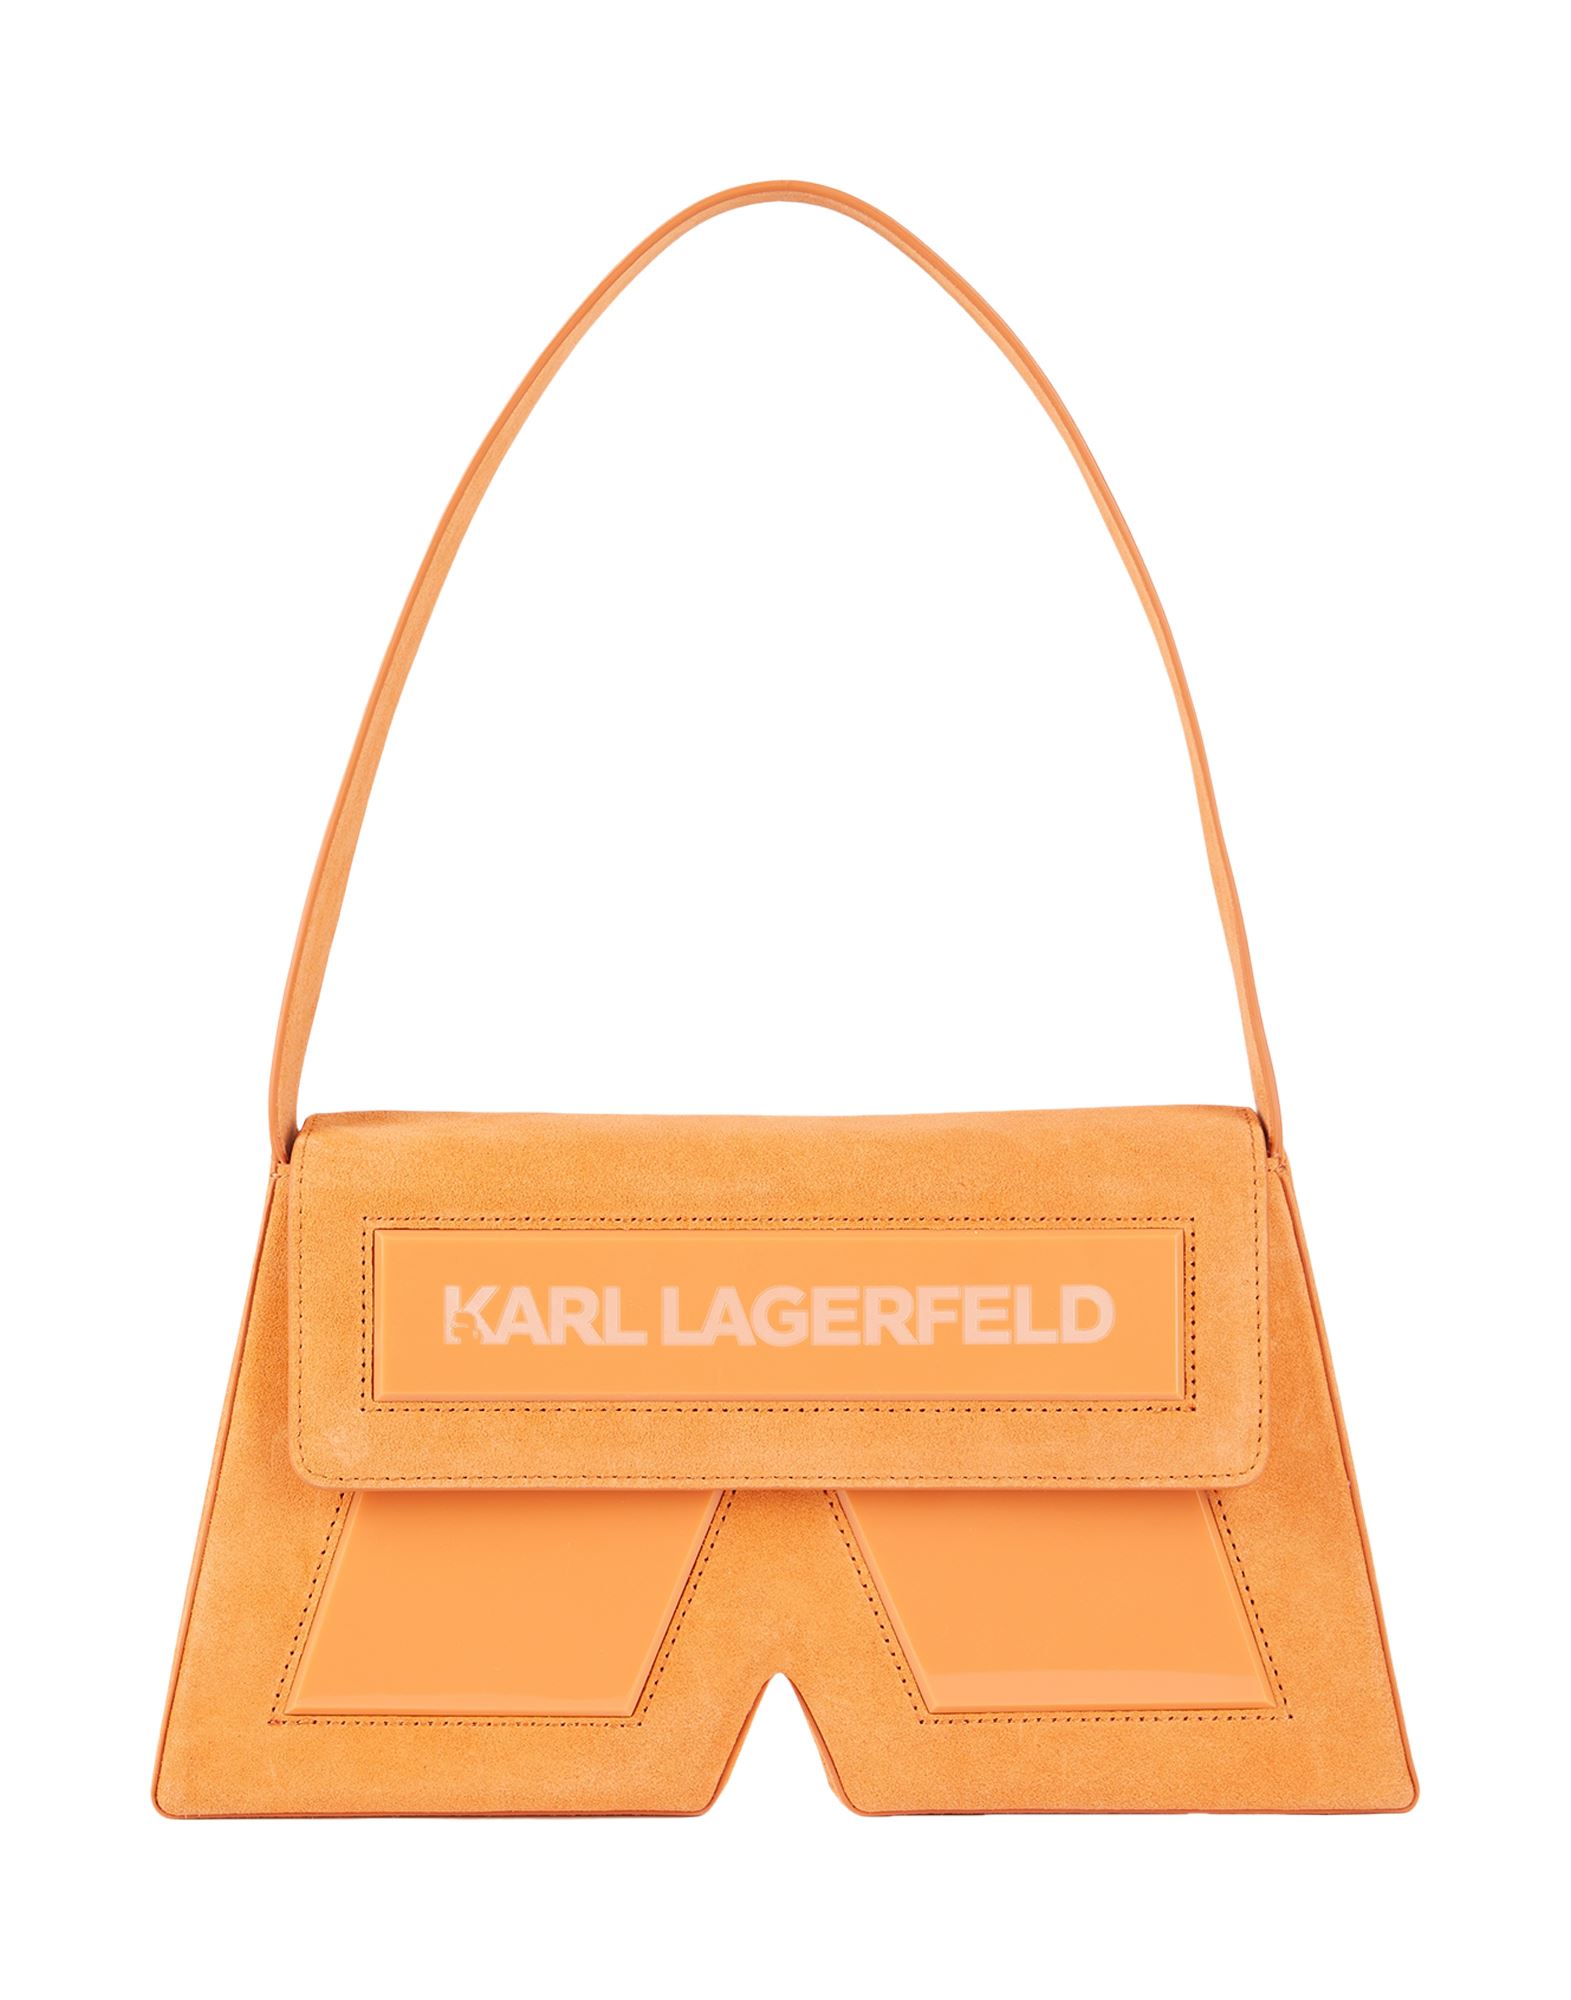 カール・ラガーフェルド(Karl Lagerfeld) バッグ | 通販・人気 ...